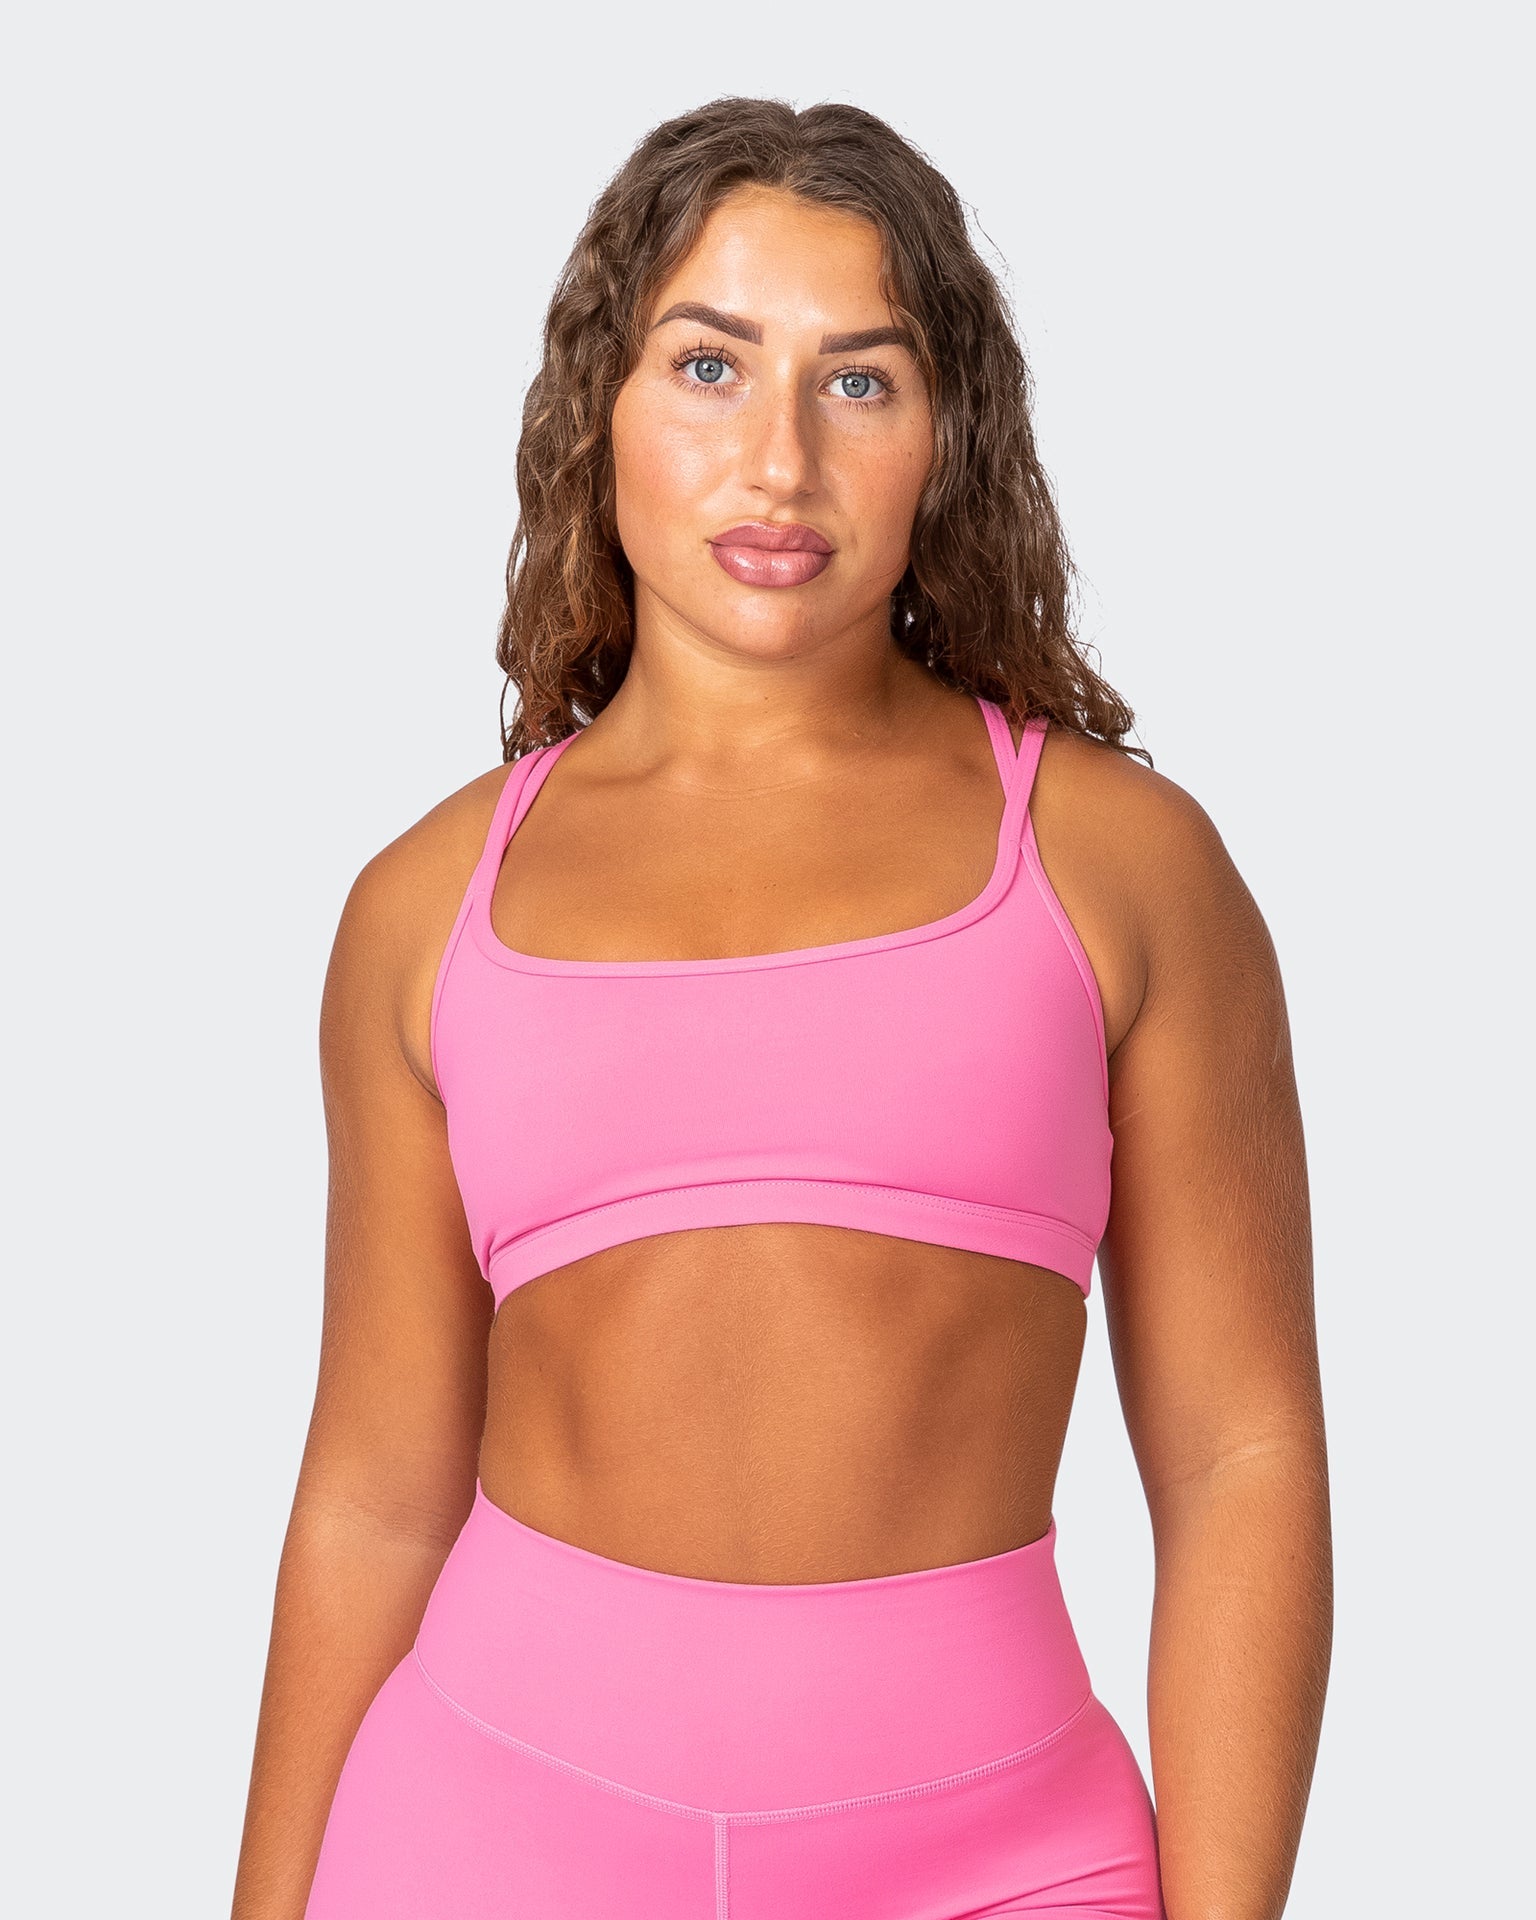 https://www.beactivewear.com.au/cdn/shop/products/musclenation-sports-bras-pace-it-bra-bubblegum-37855643926697_1536x1920.jpg?v=1681674346